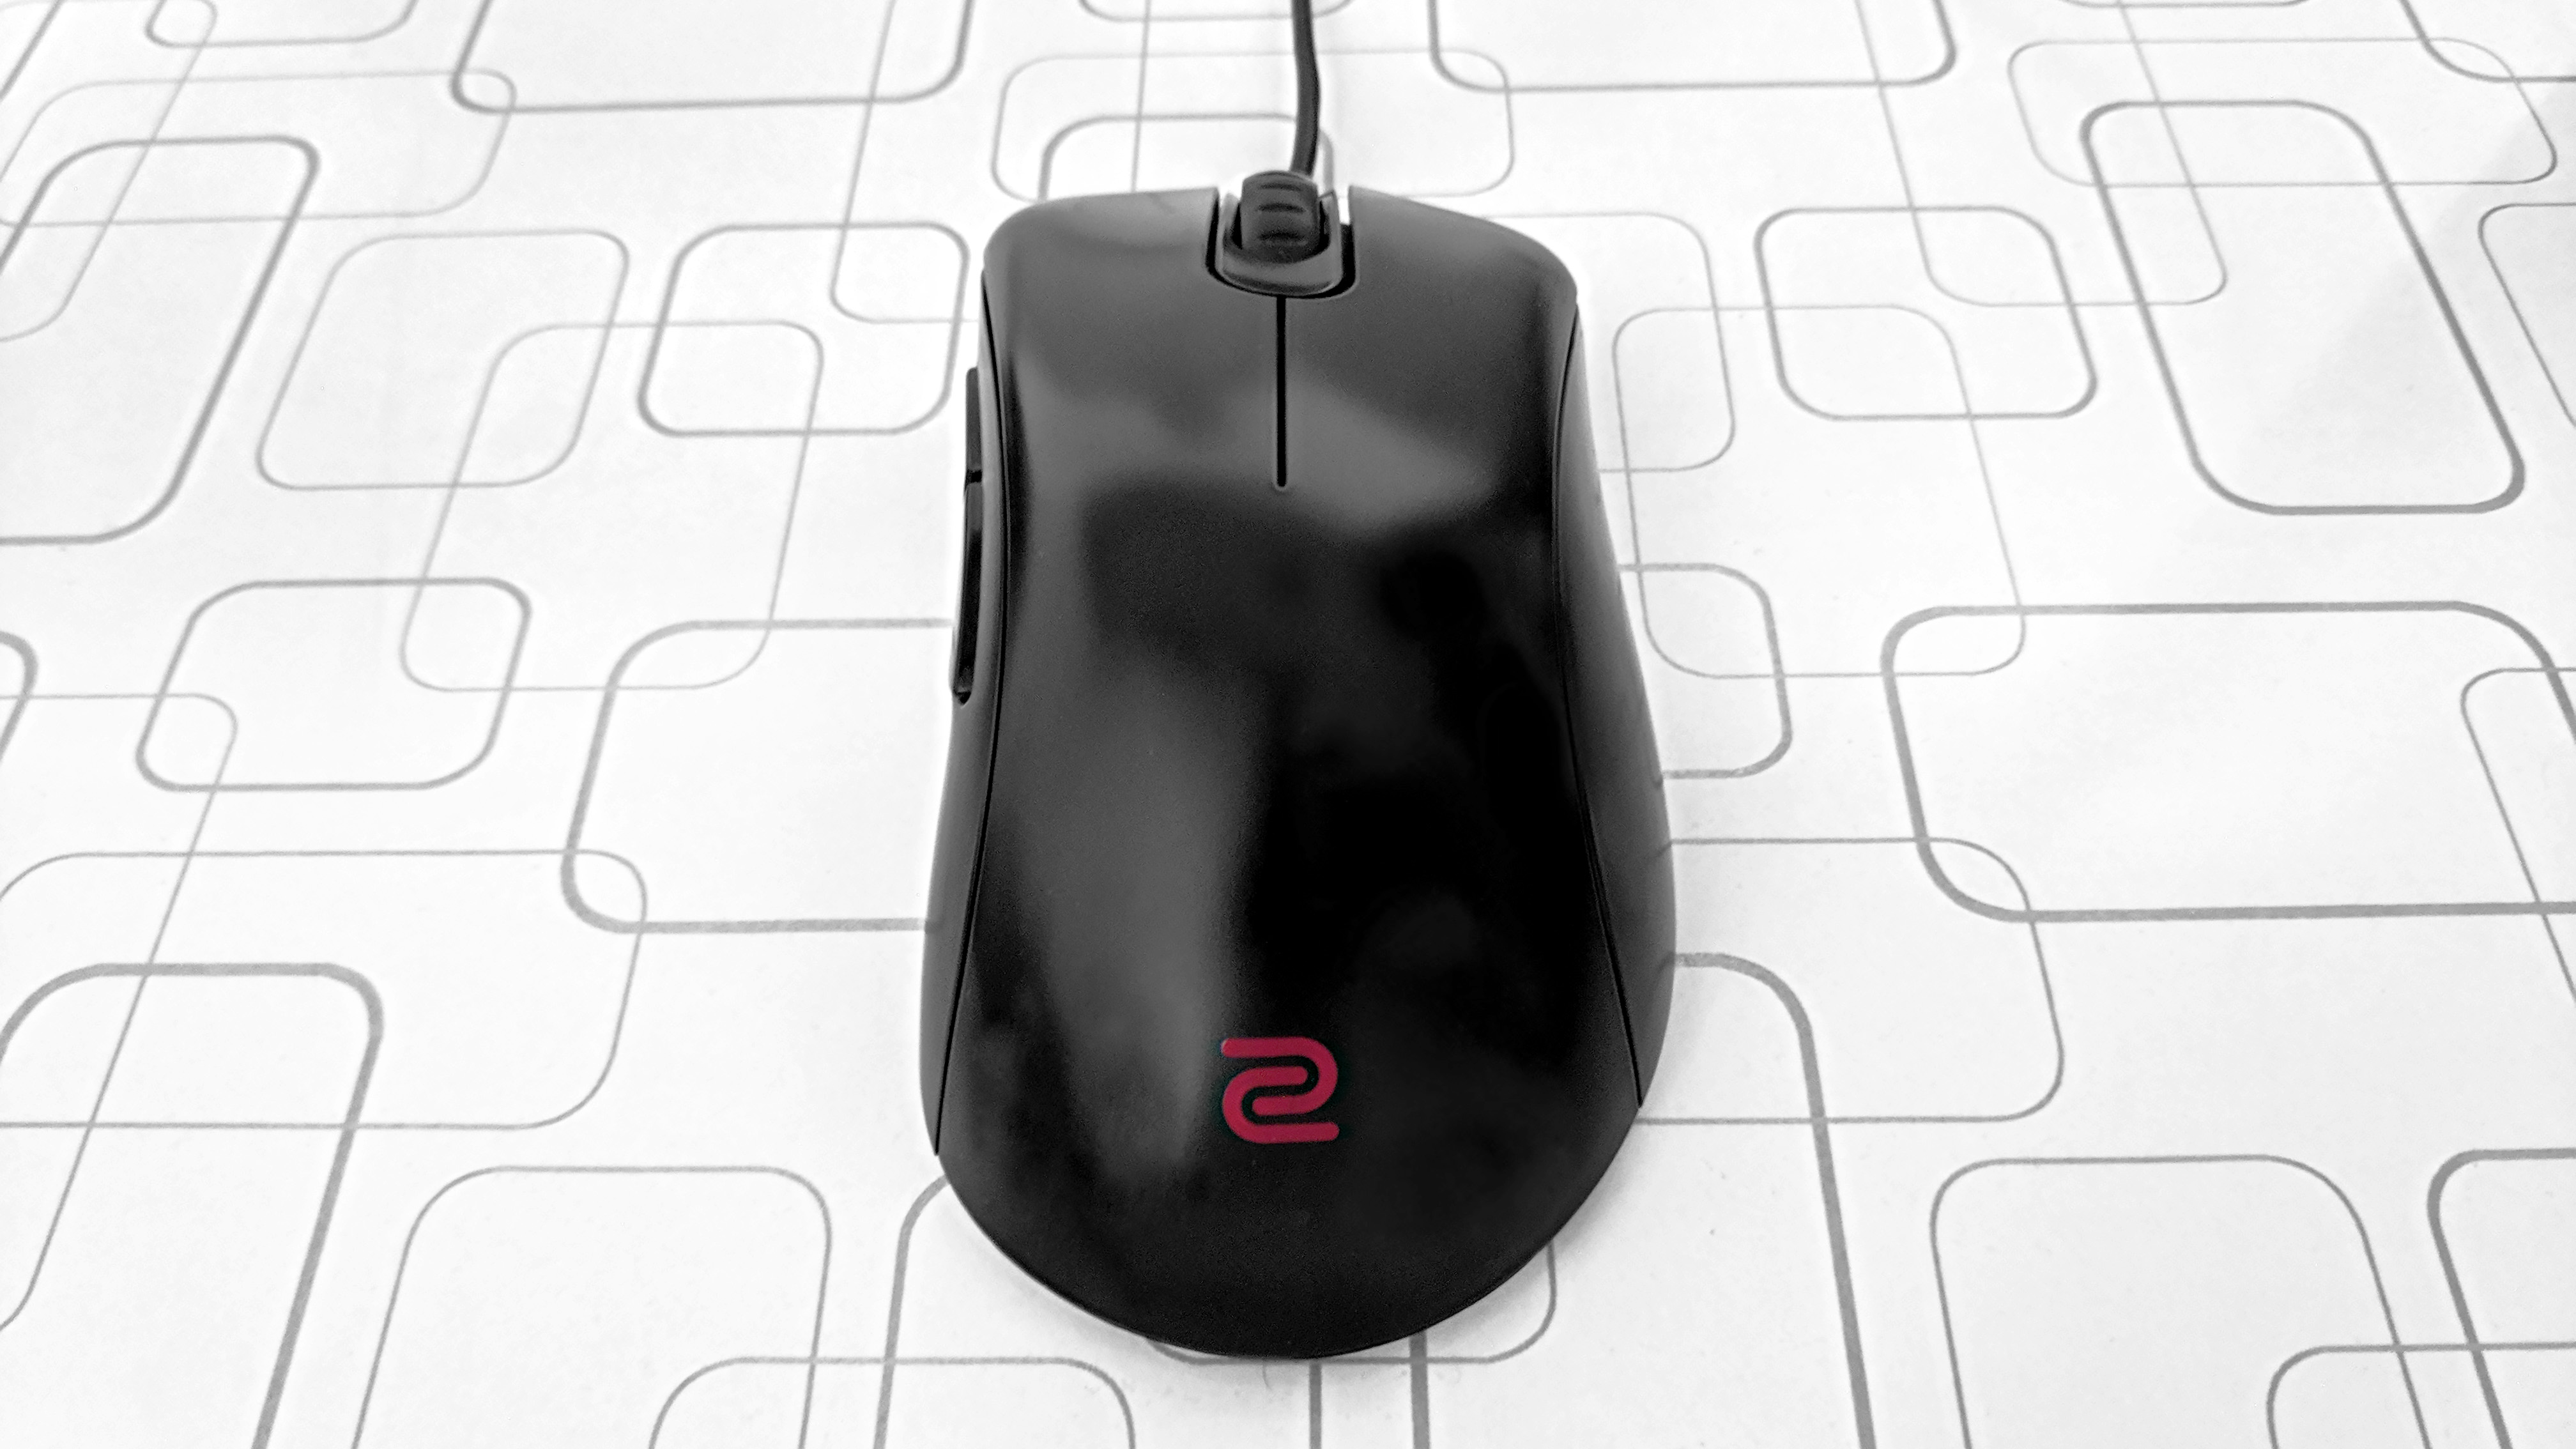 Análise Ergonômica do Mouse BenQ Zowie EC1-B para jogos